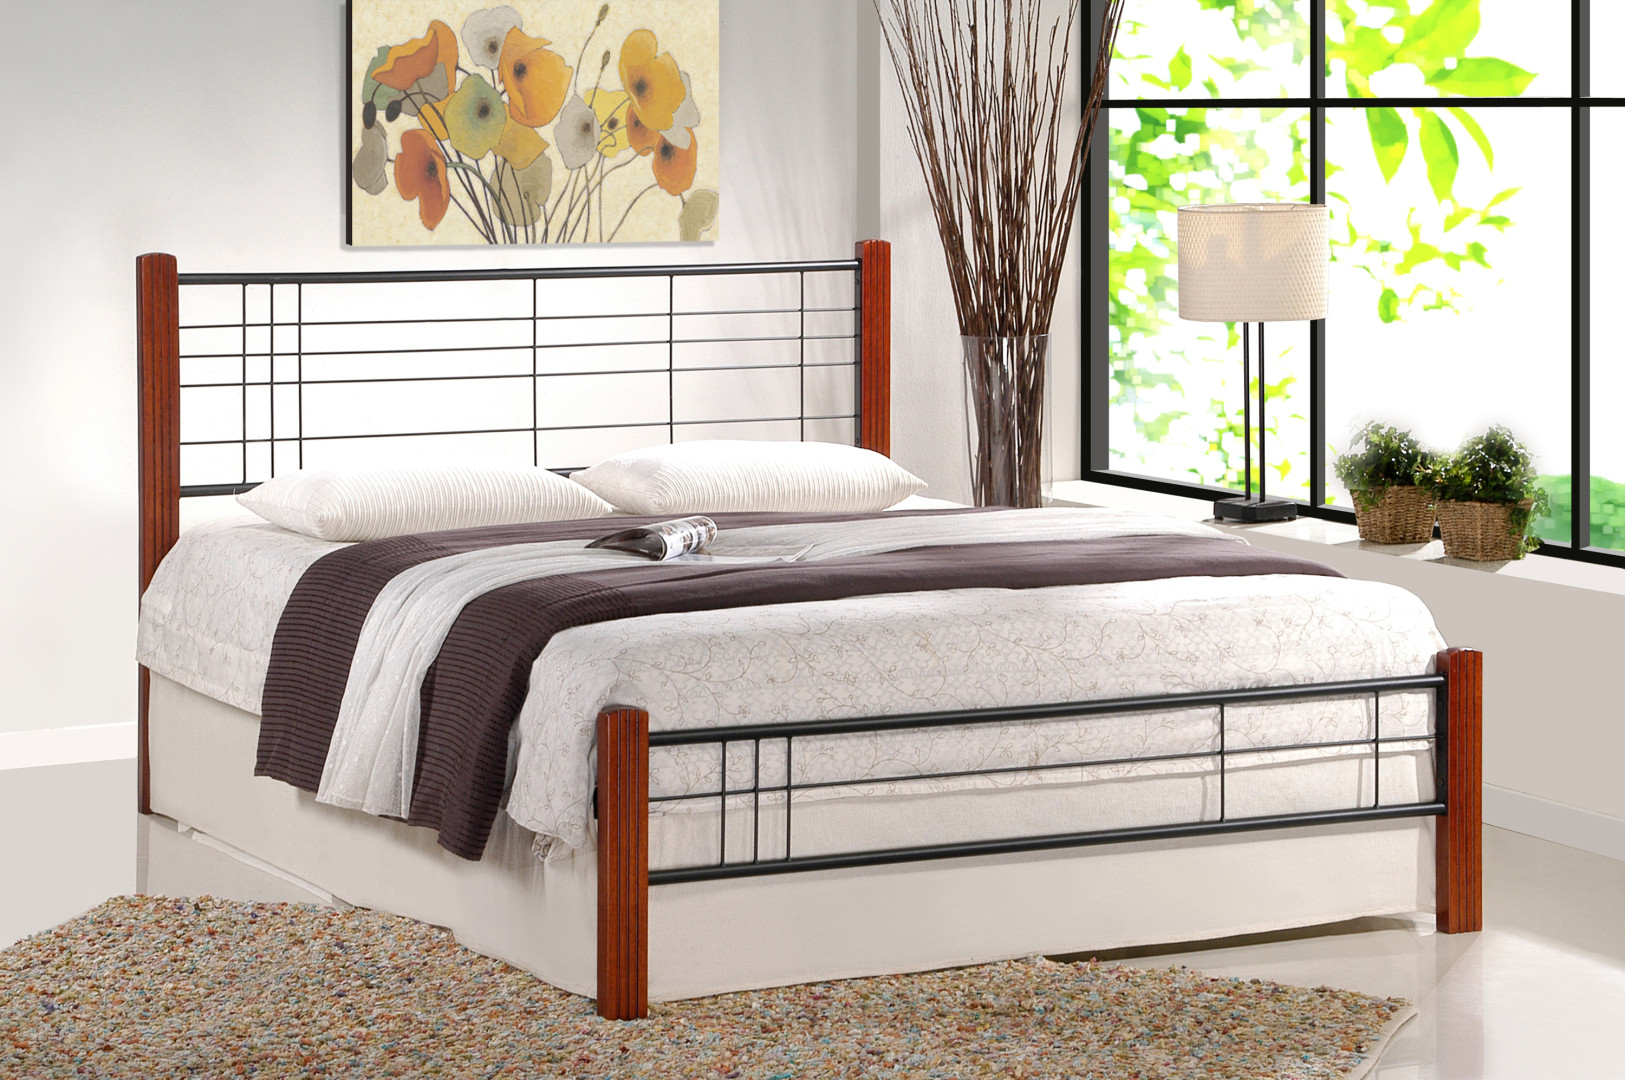 Produkt w kategorii: Łóżka, nazwa produktu: Łóżko VIERA - elegancja i komfort